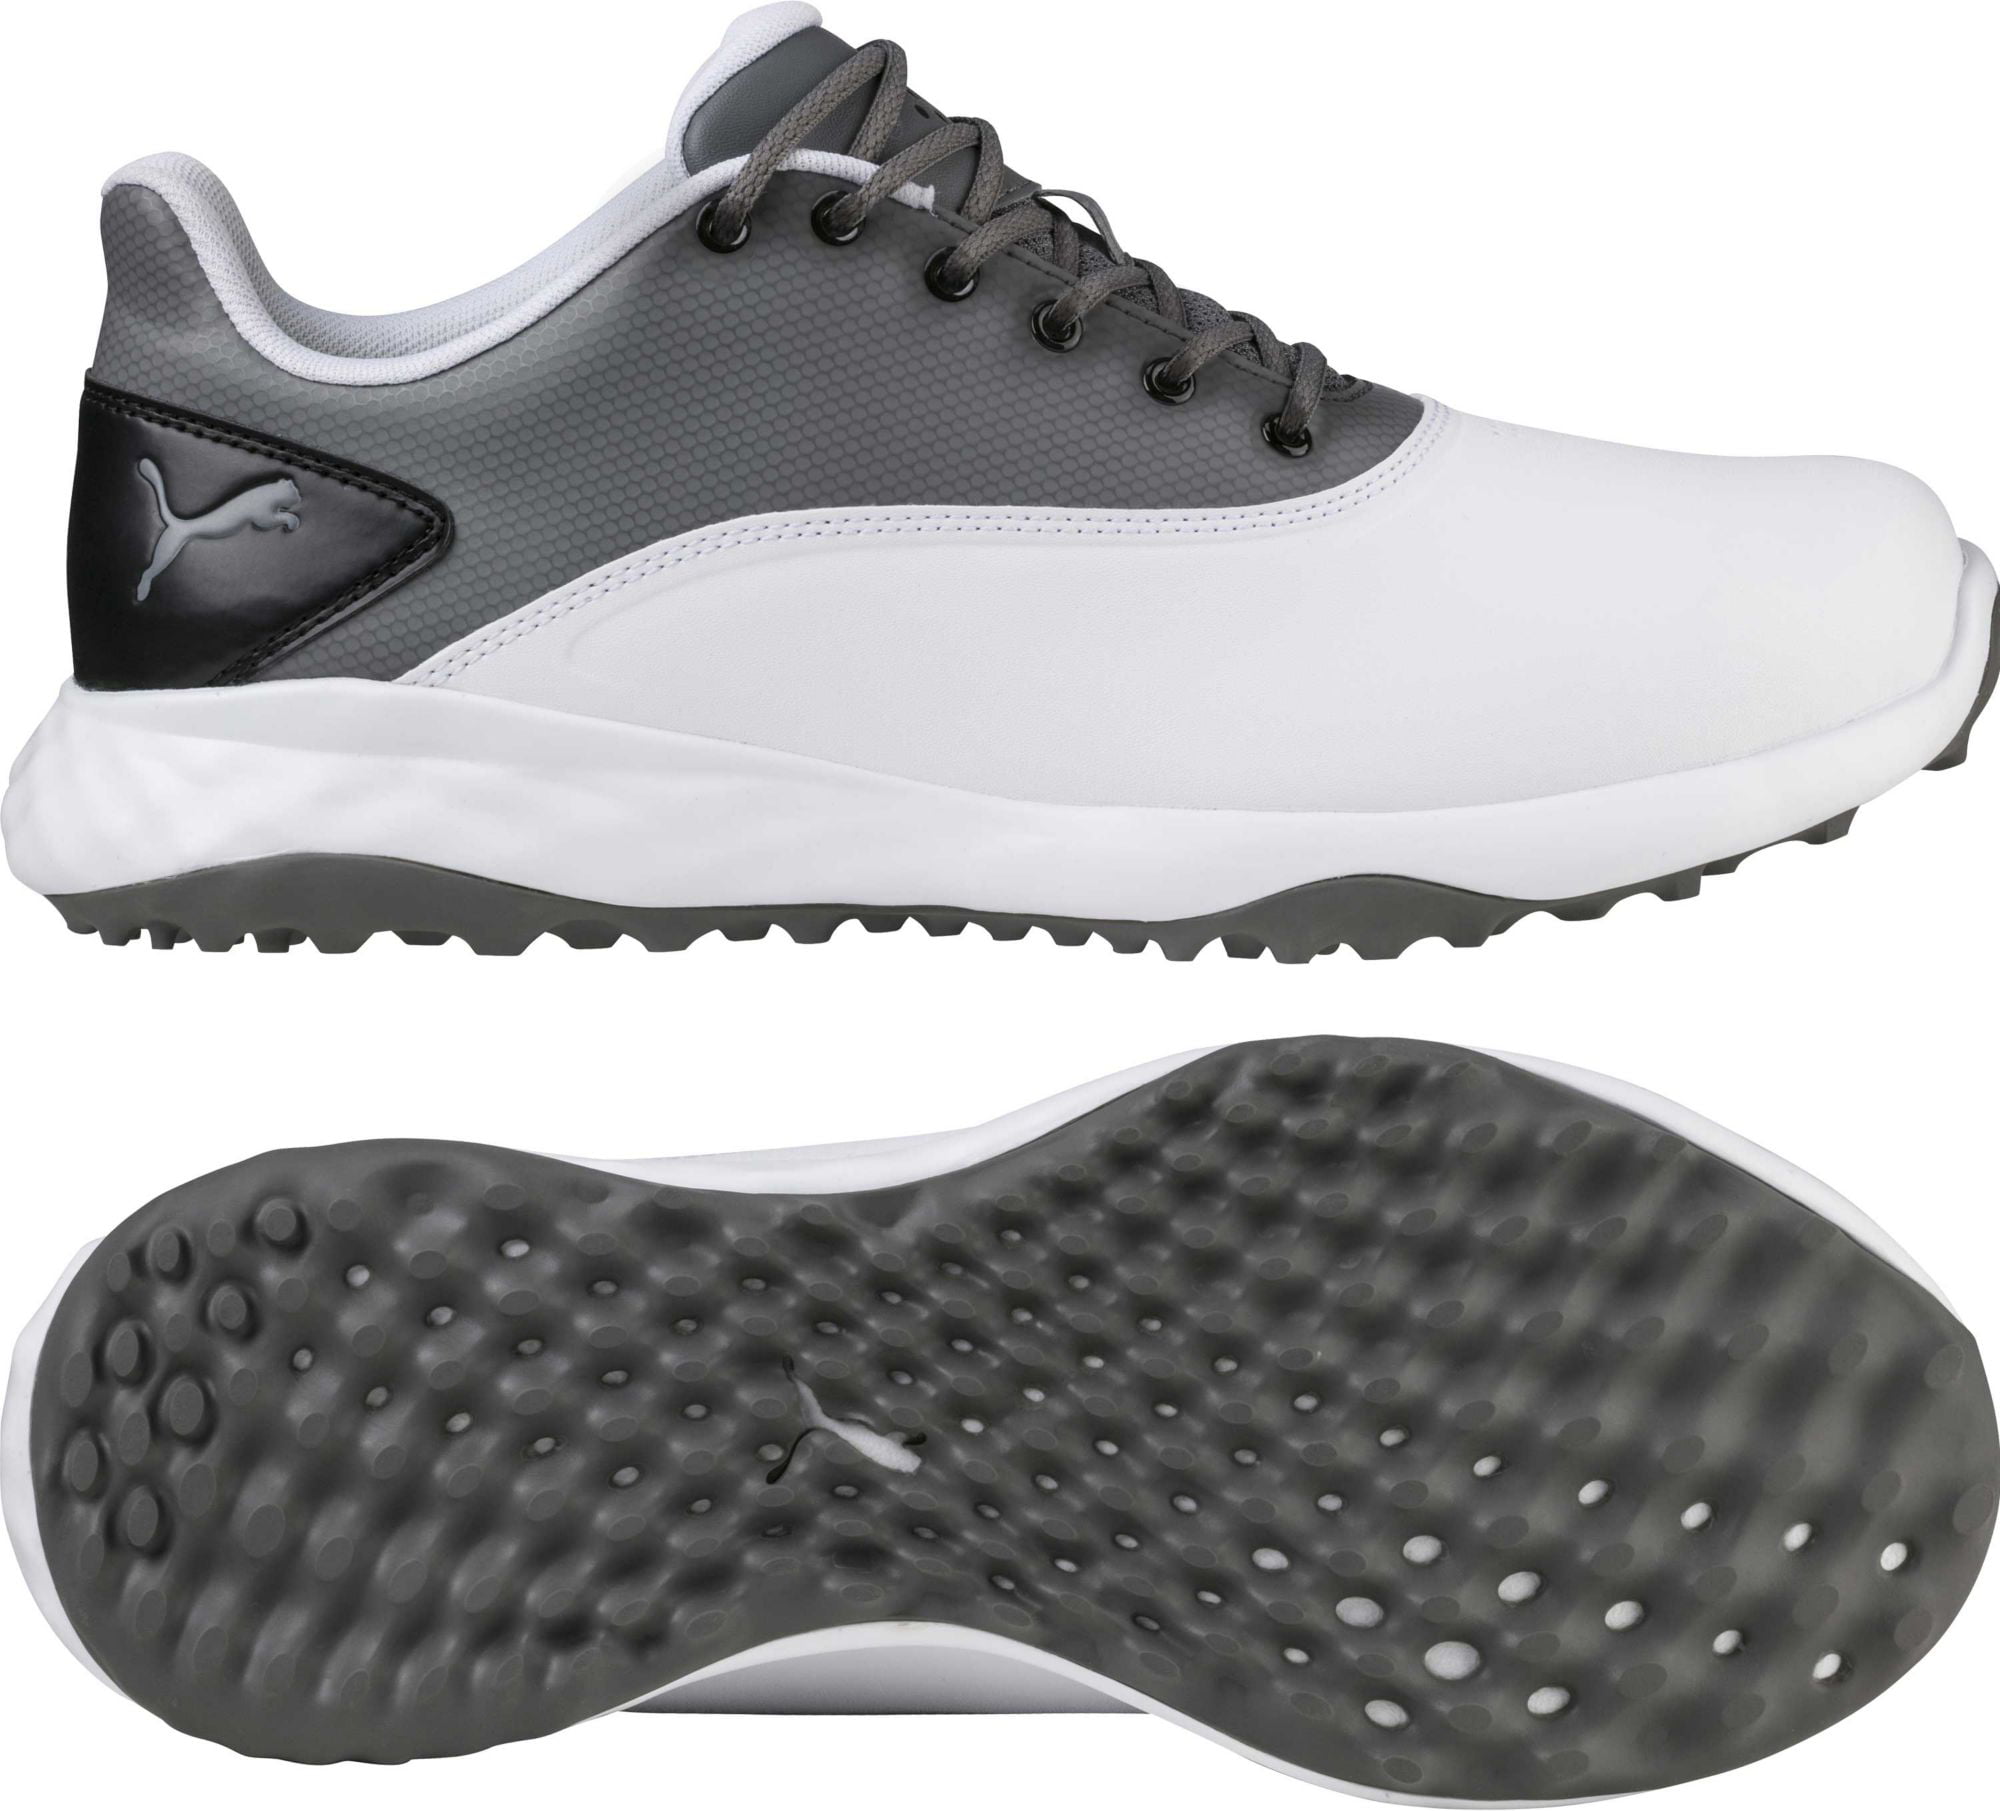 PUMA Men's Grip Fusion Golf Shoes 